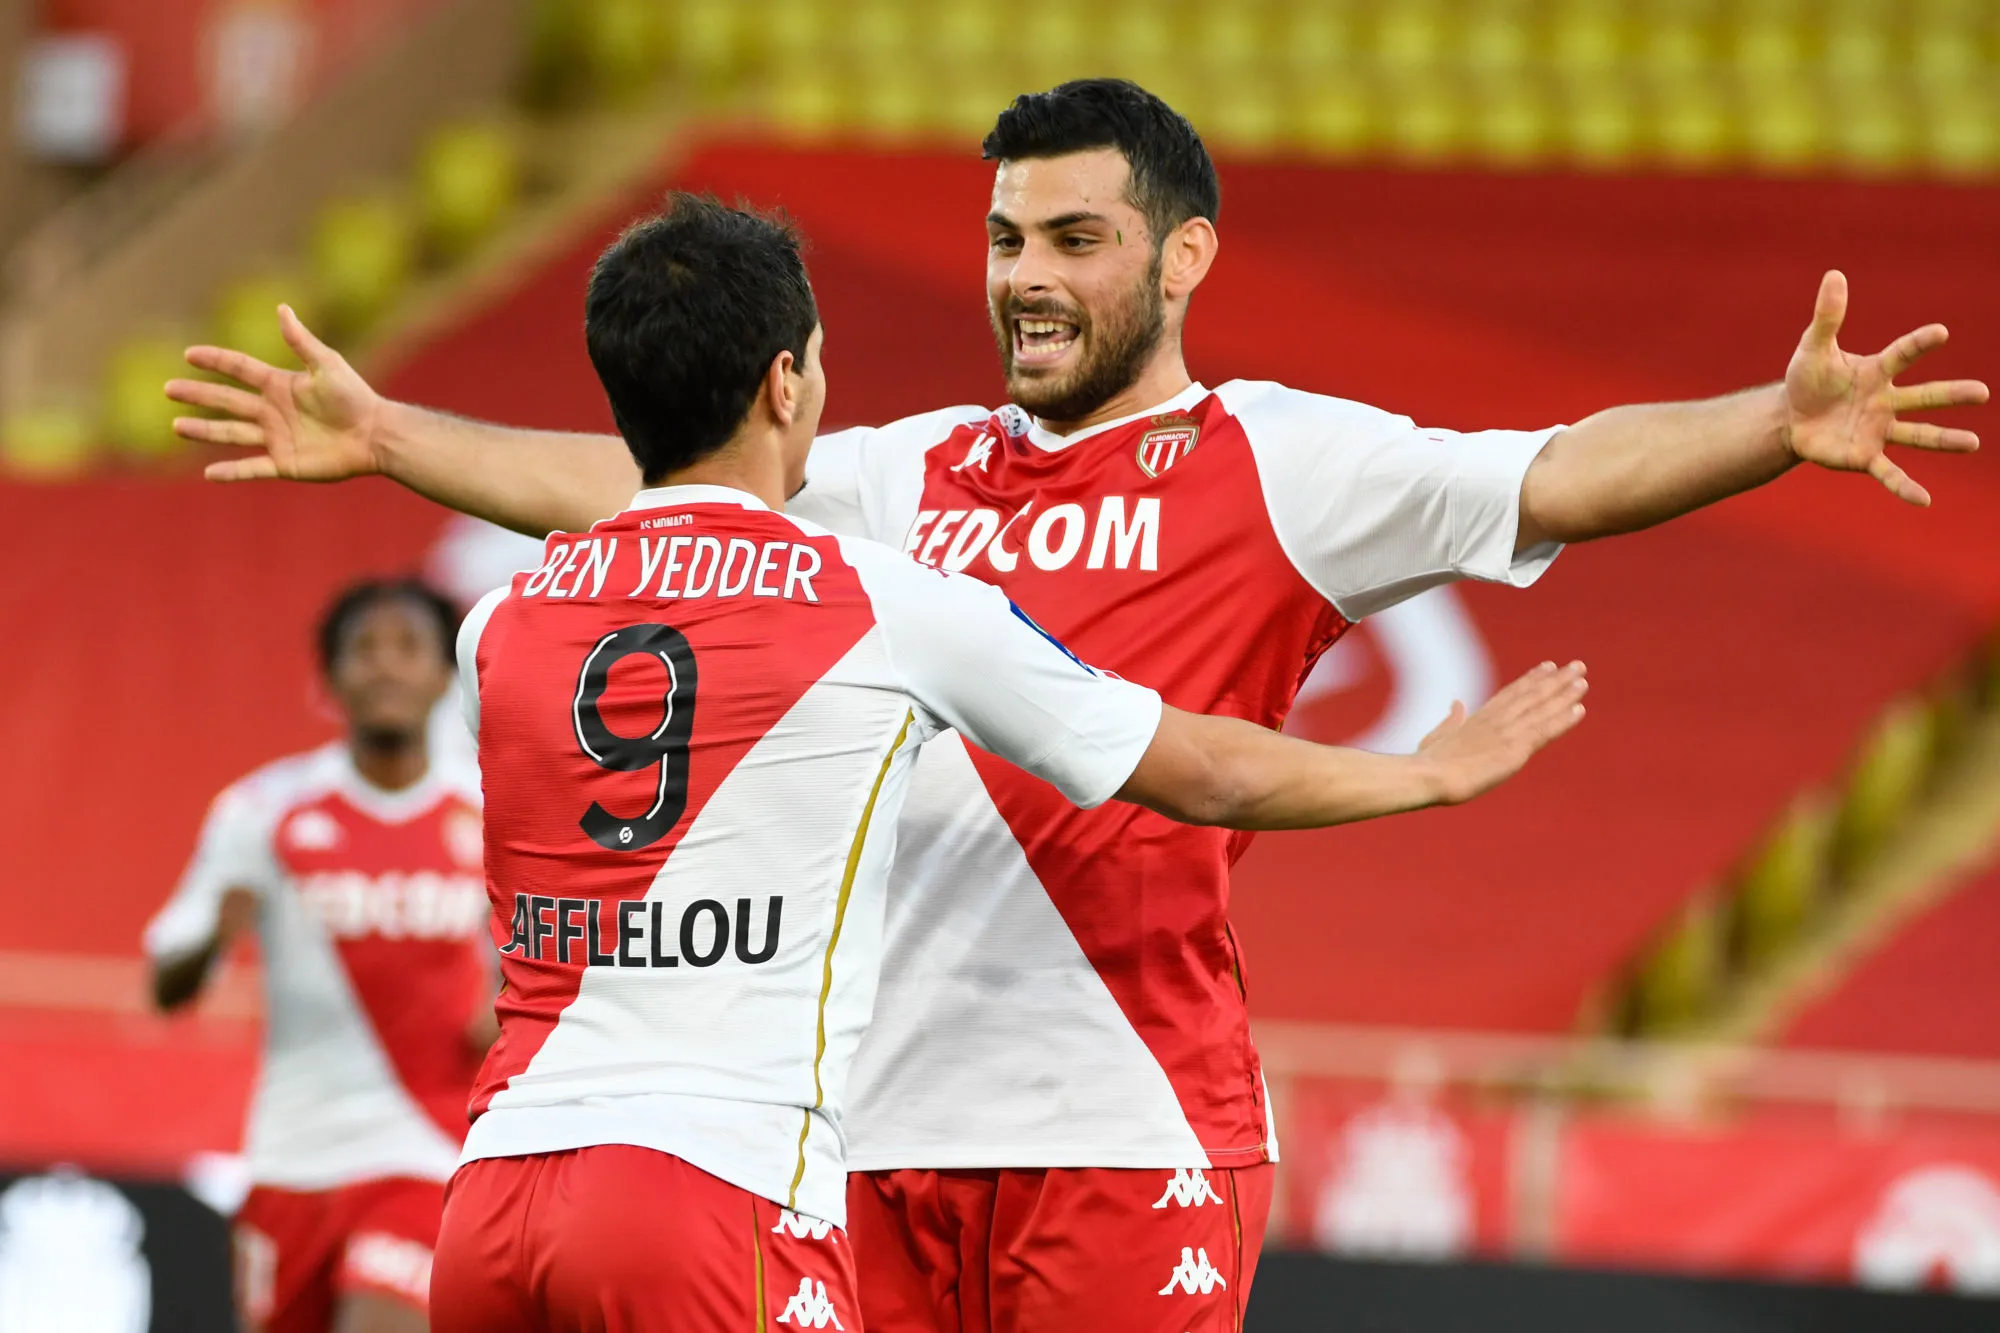 Pronostic Angers Monaco : Analyse, cotes et prono du match de Ligue 1